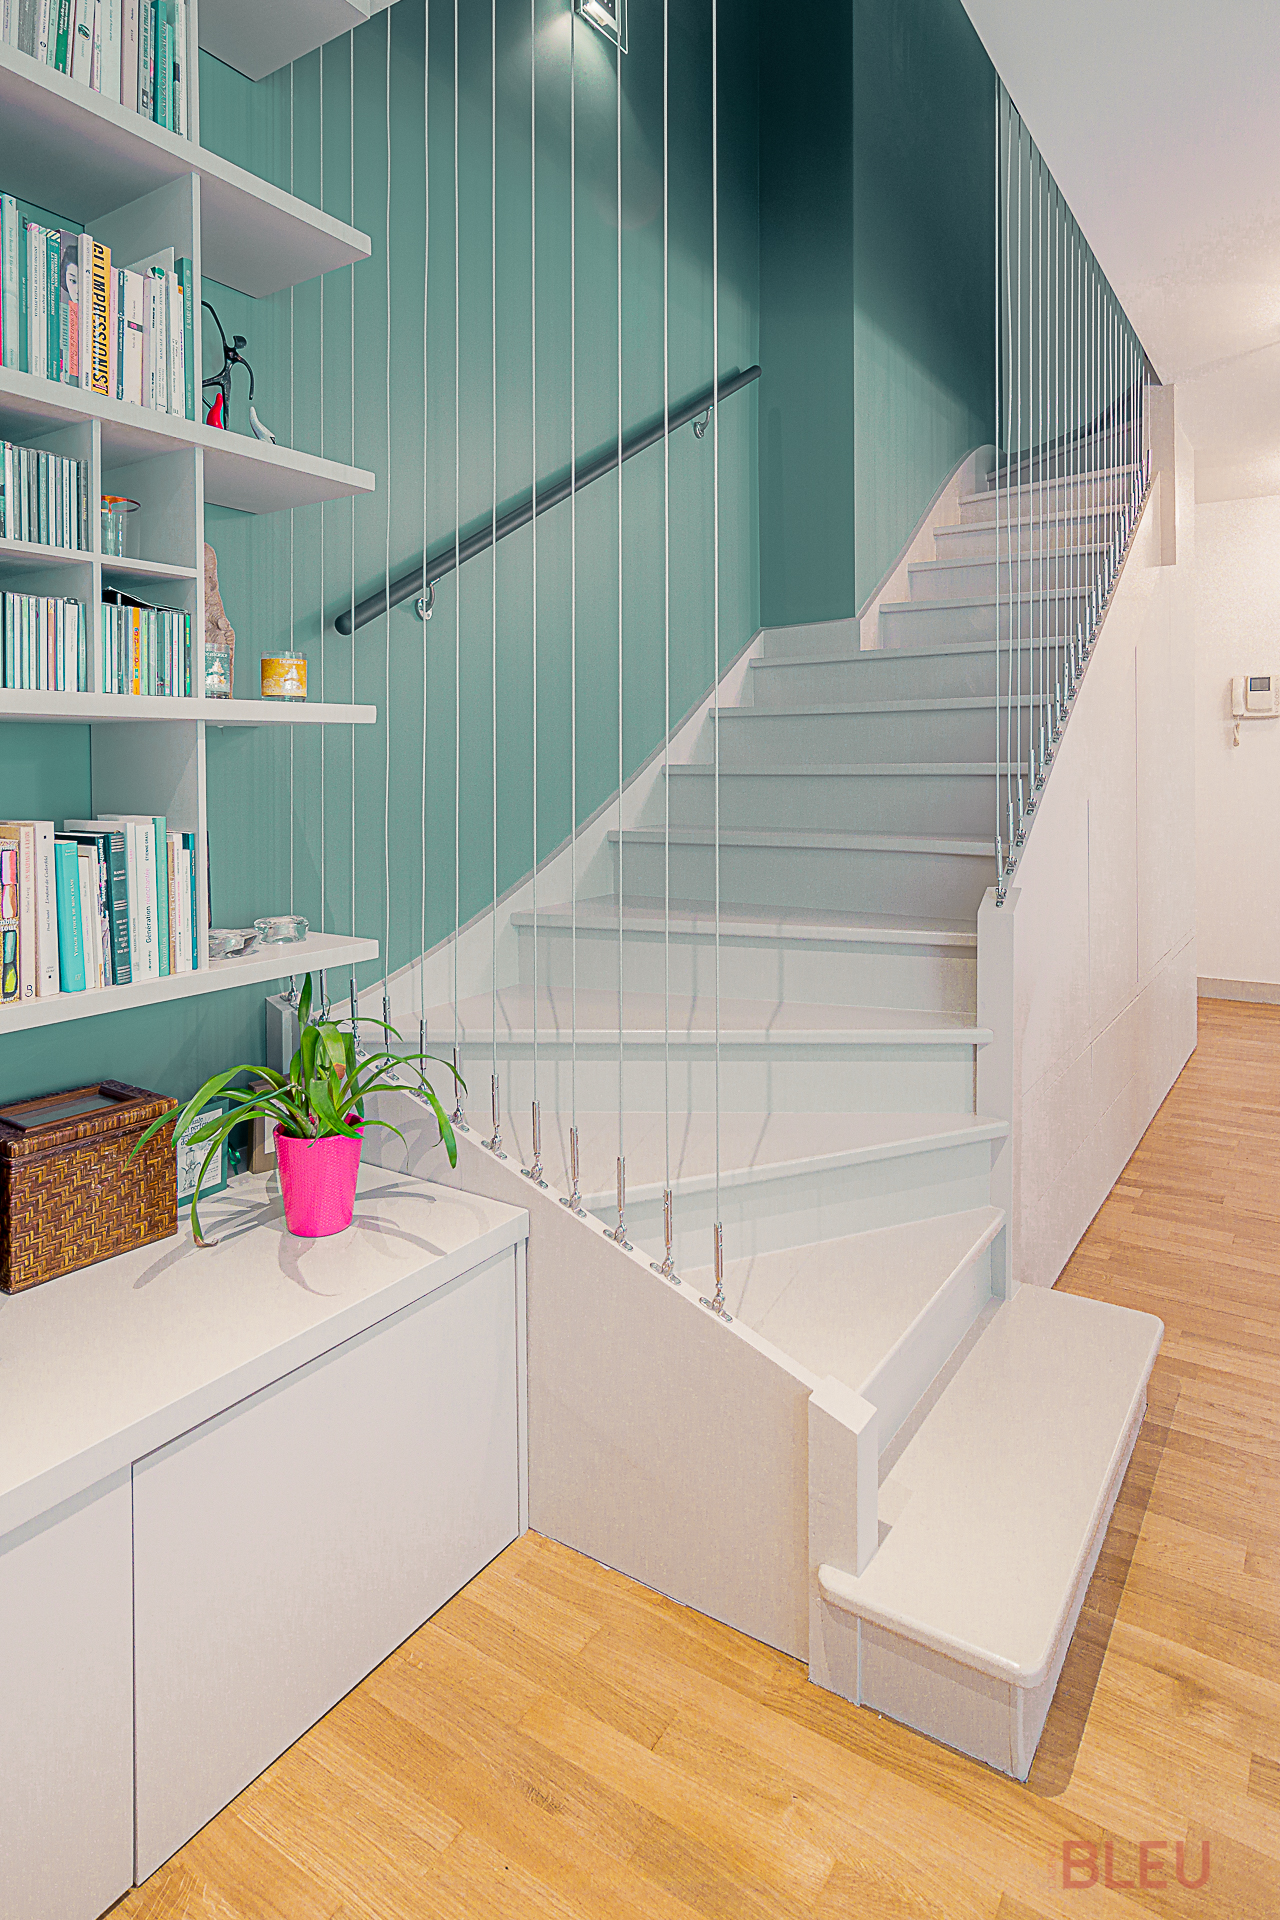 Escalier moderne blanc et bibliothèque intégrée dans un appartement duplex rénové par le cabinet architecture Paris Agence BLEU, montrant l'optimisation de l'espace et l'utilisation élégante de la lumière naturelle.